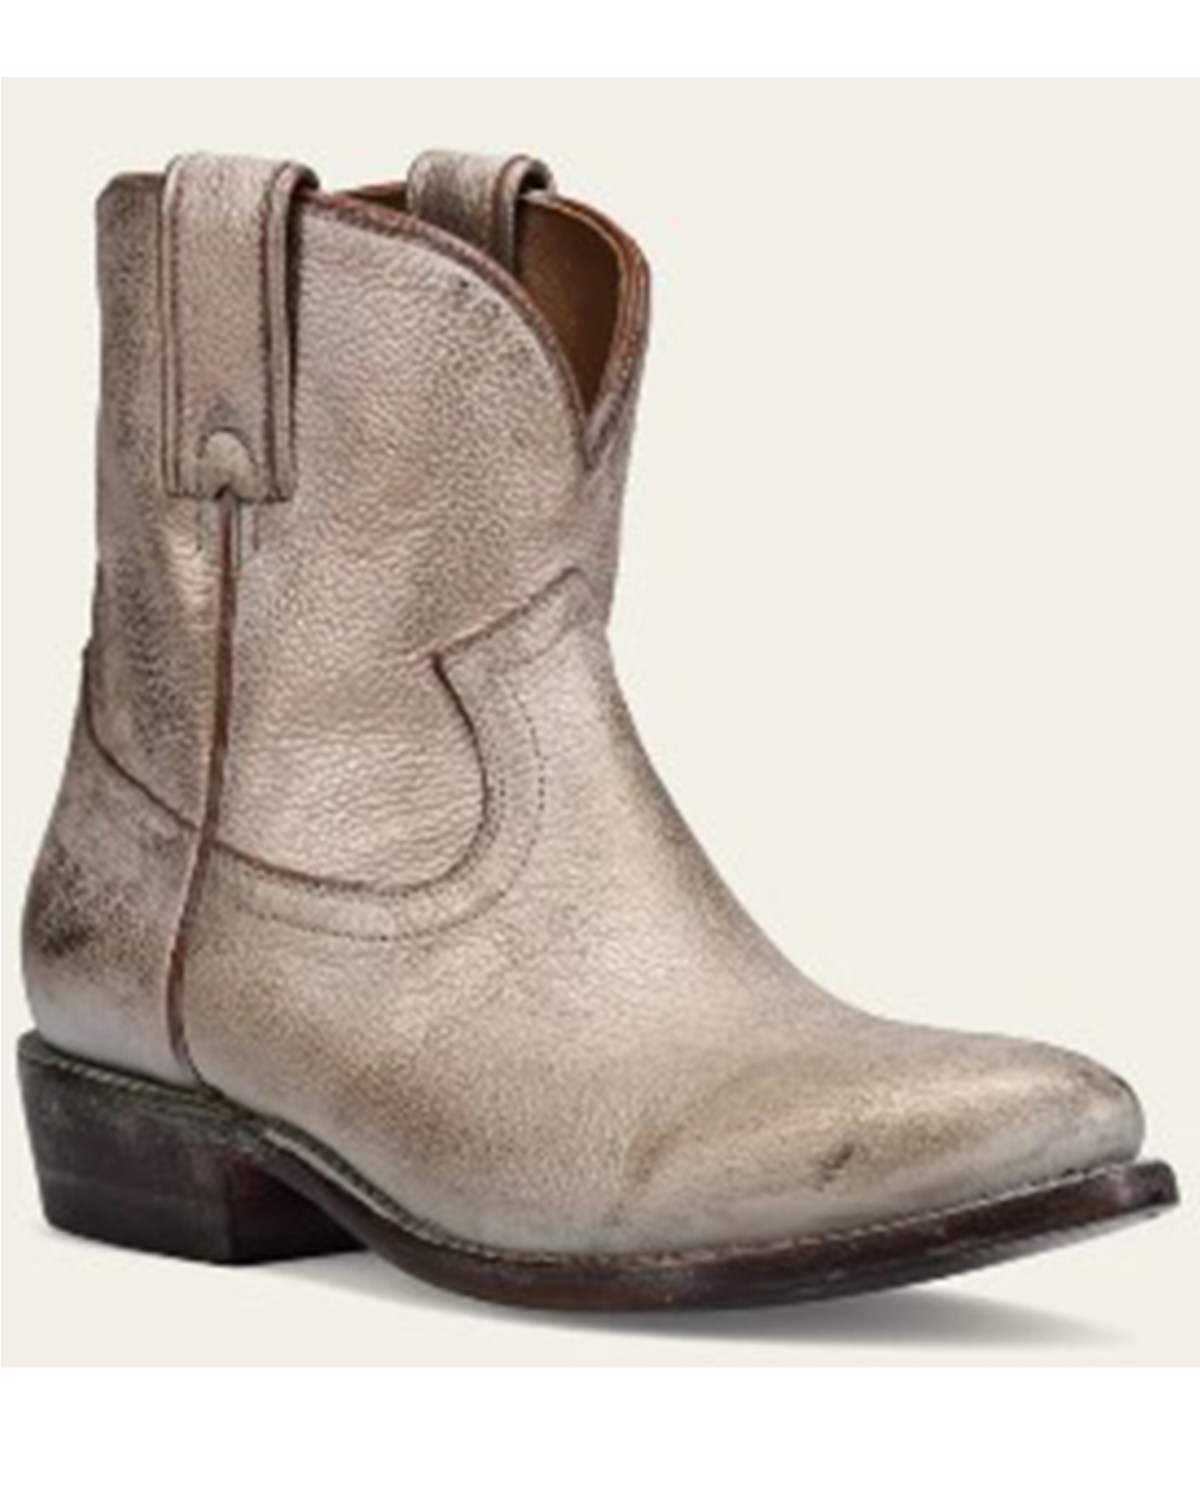 Frye Women's Billy Short Western Boots